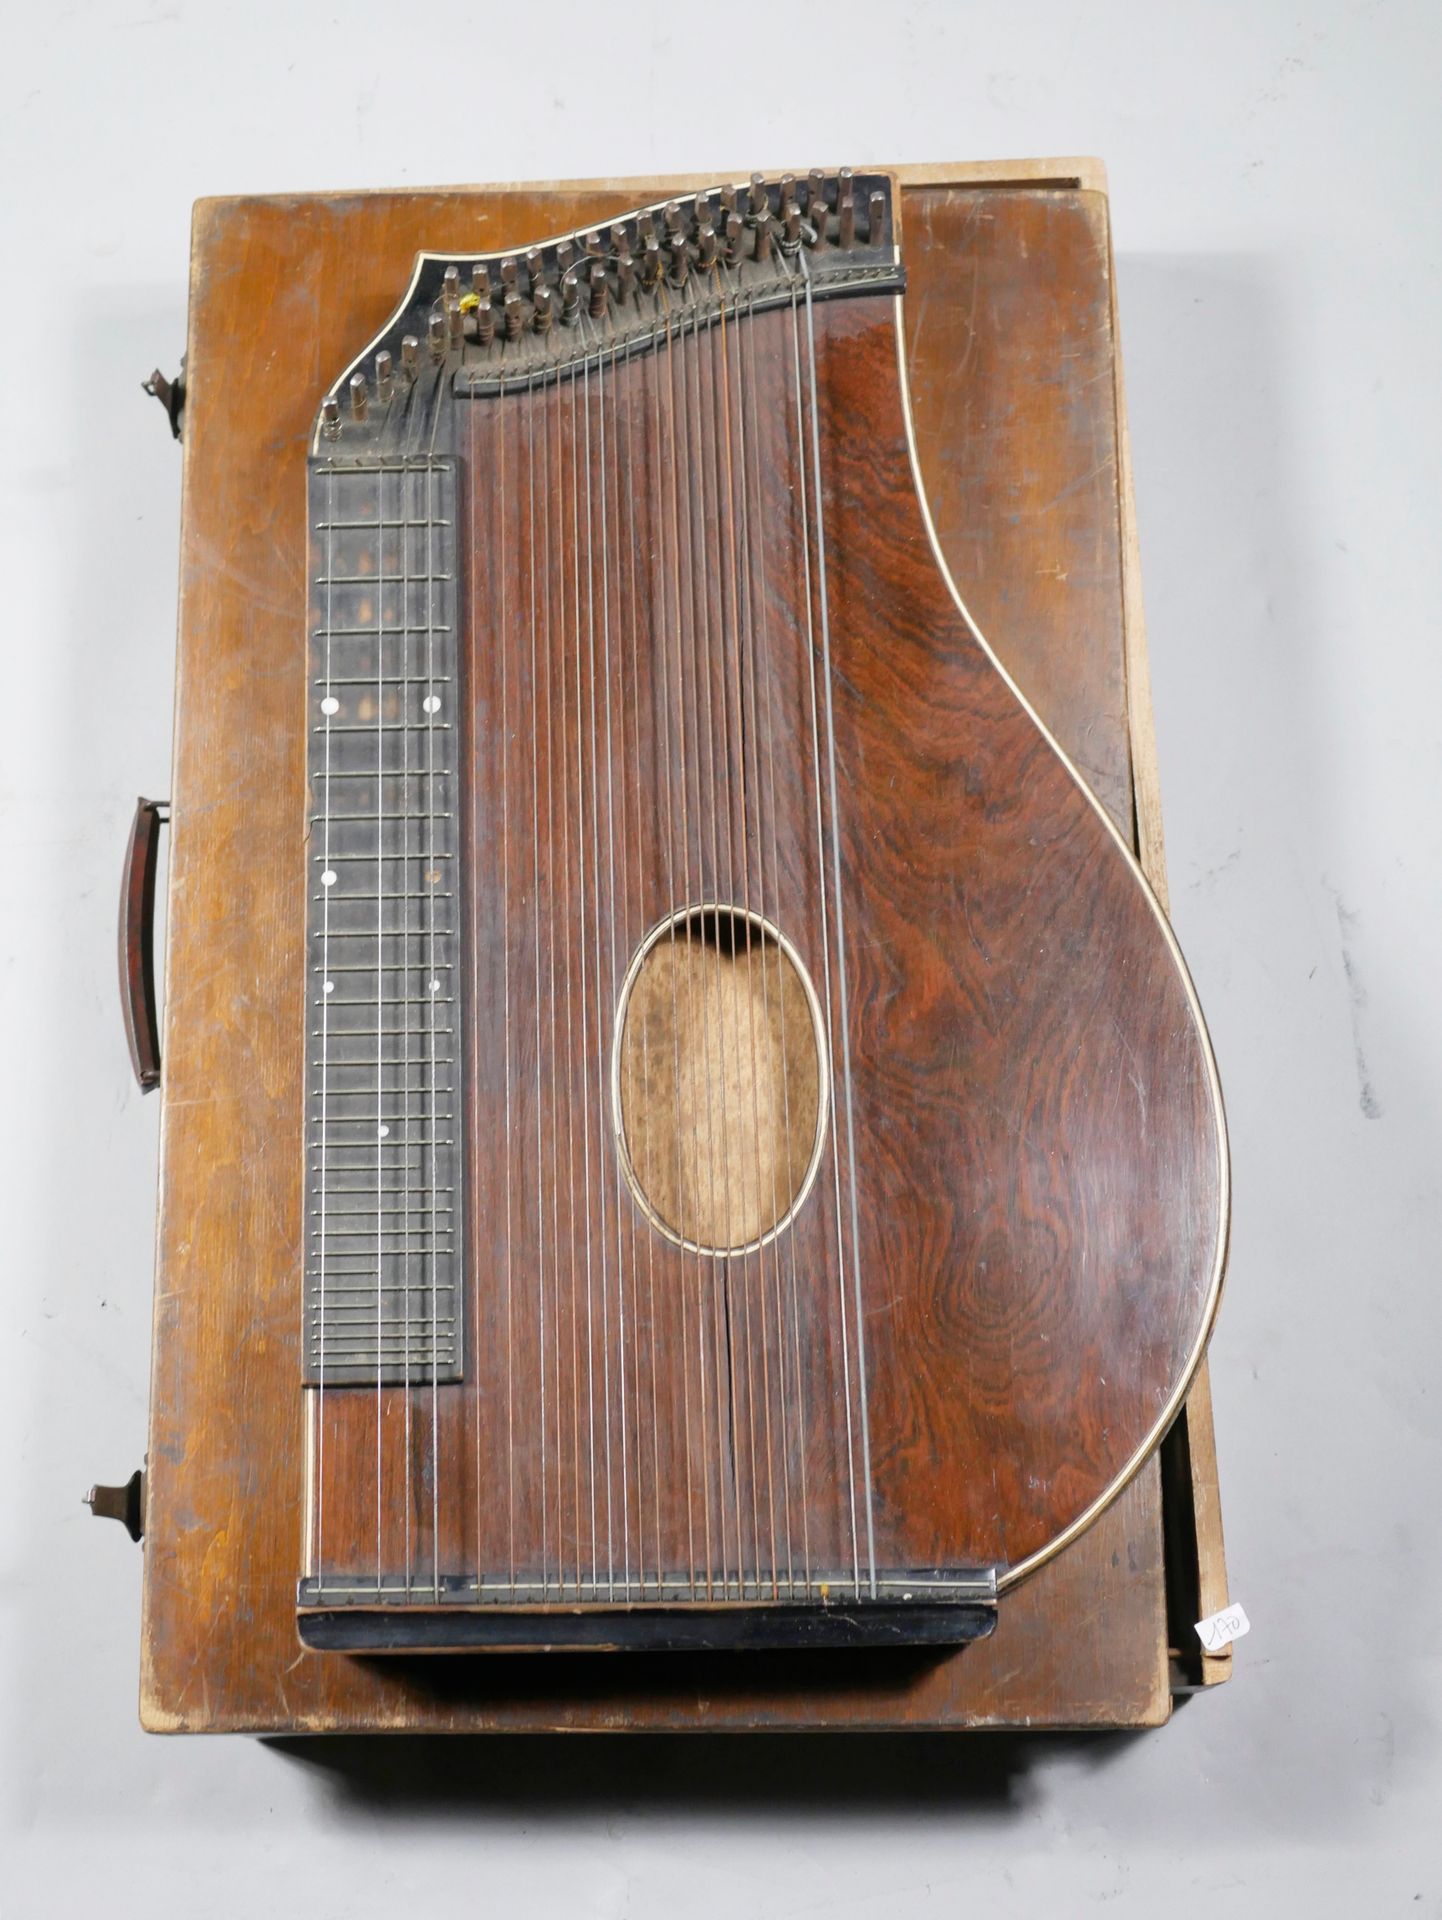 Null 古筝ca。1900年，有盒子和乐谱。

按原样出售。